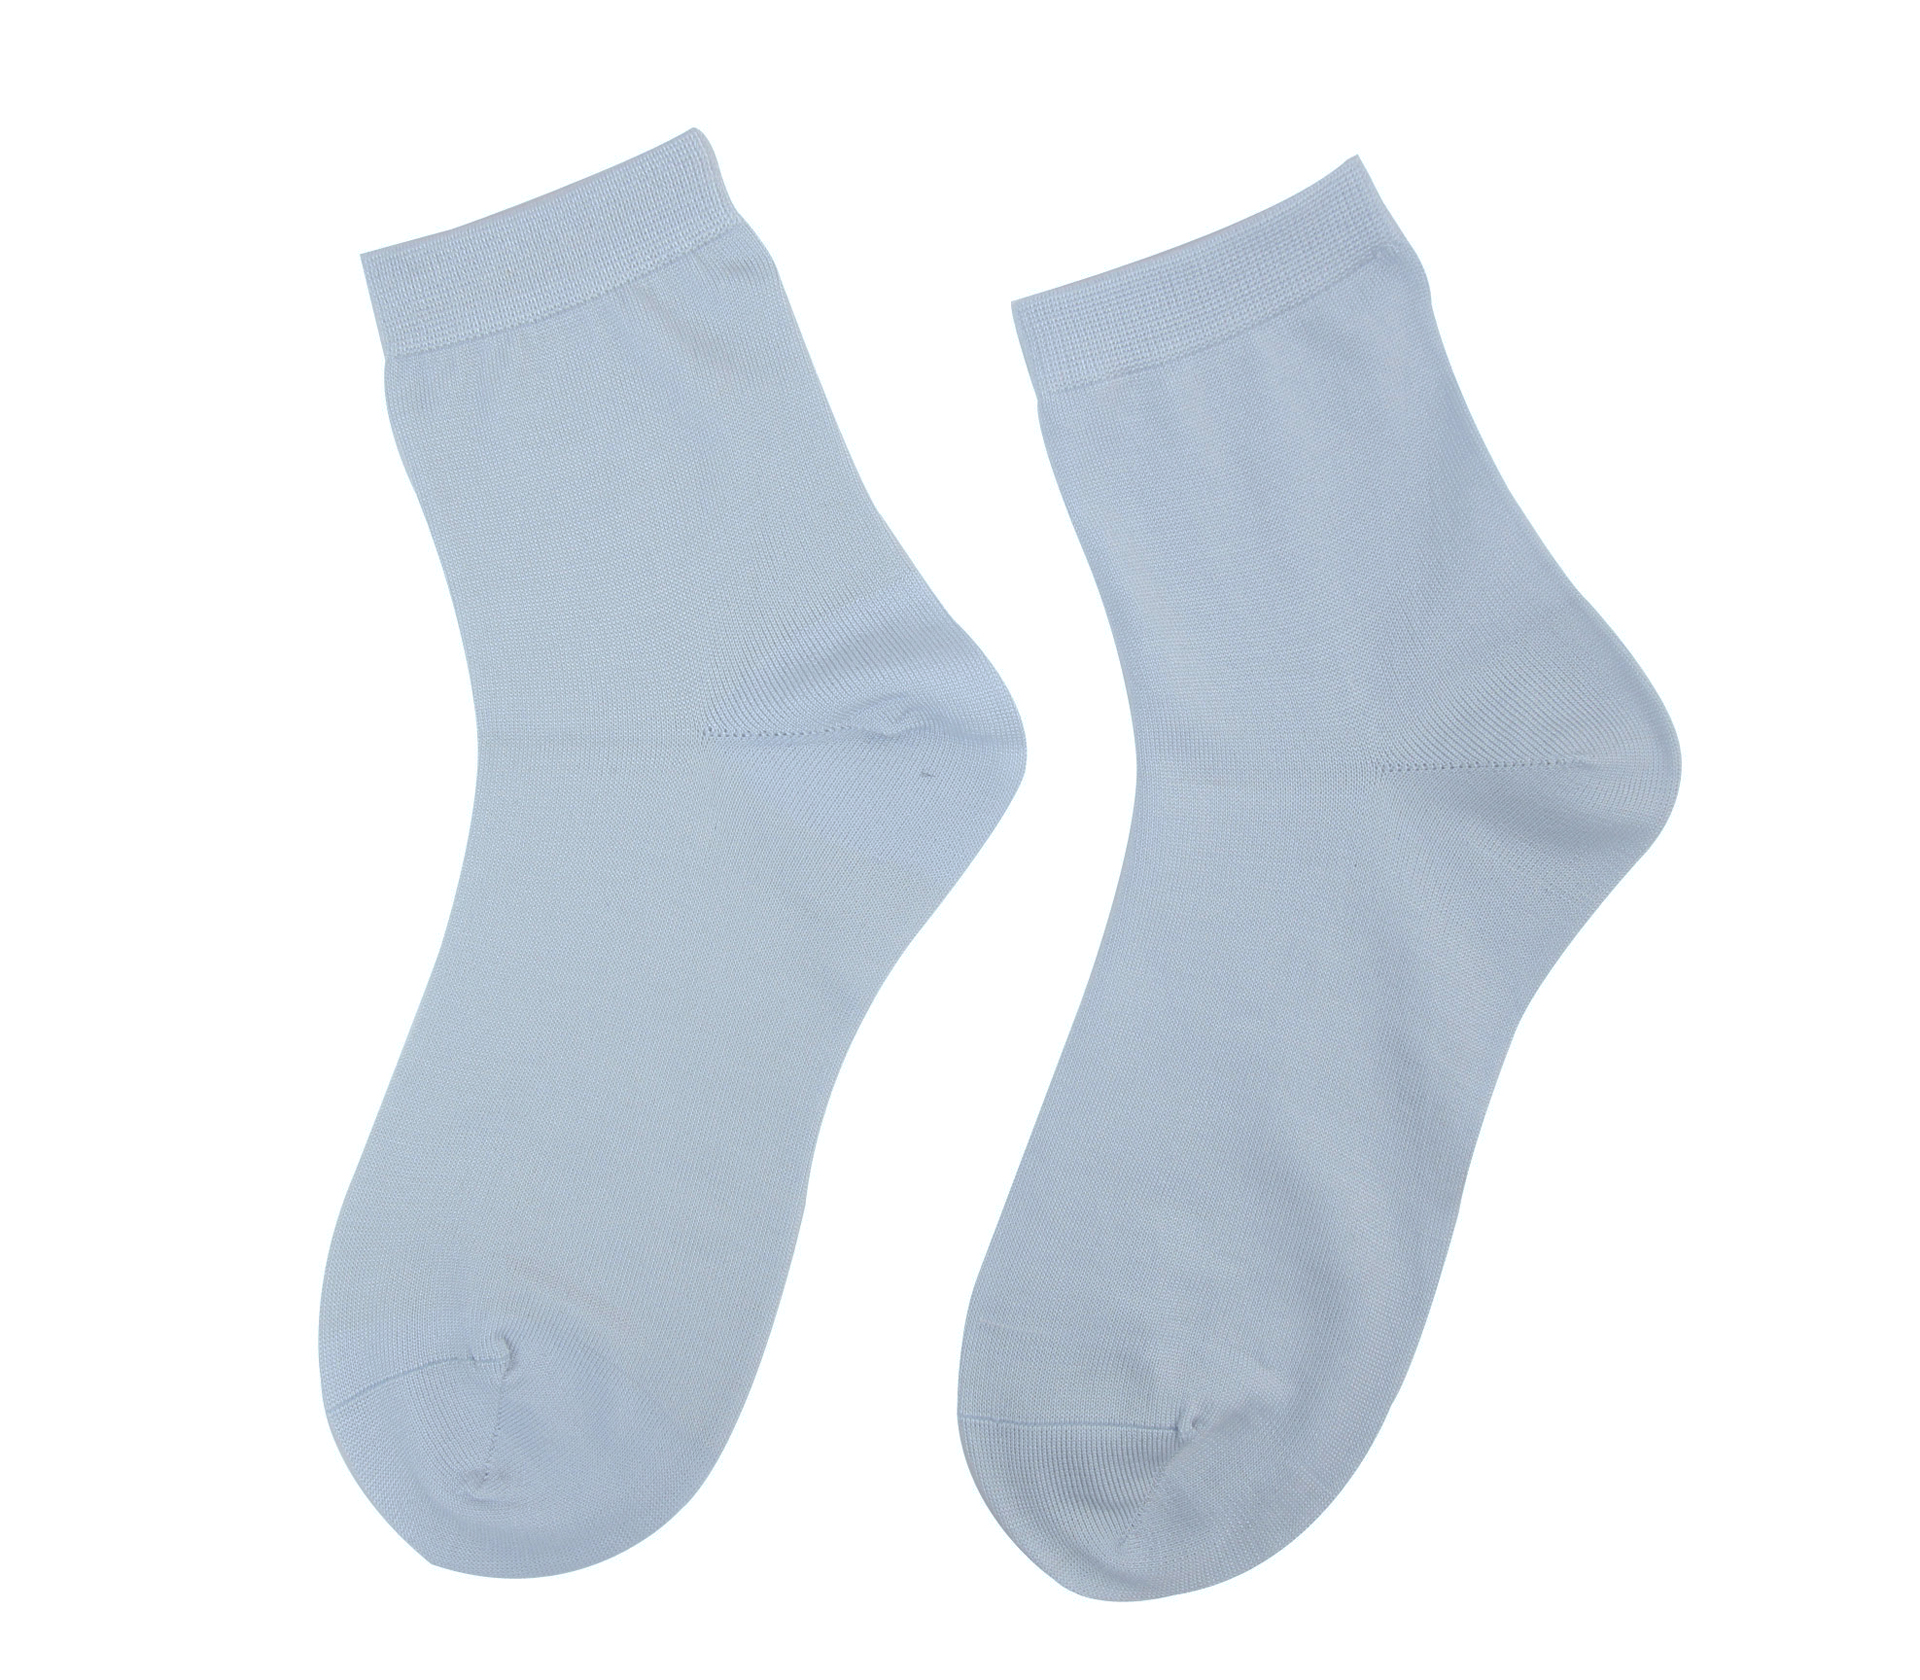 闕蘭絹舒適自在彈性蠶絲襪(藍)(22-24CM)